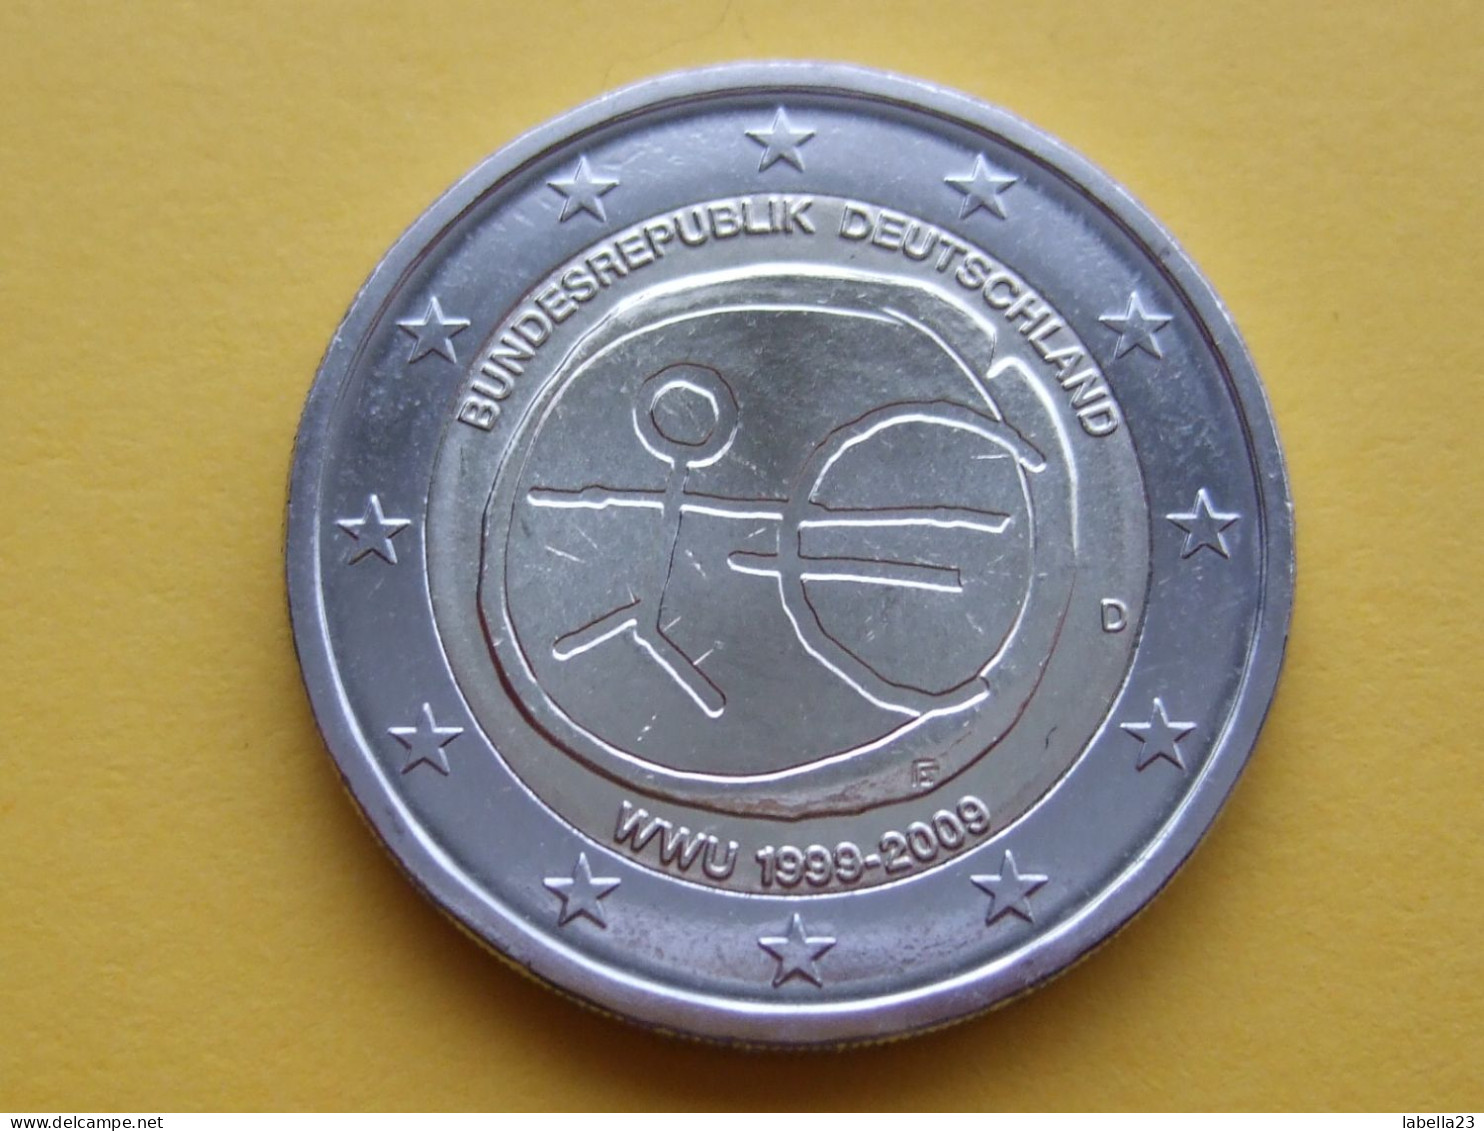 2 Euro Gedenkmünze 2009 -"Wirtschafts/ Währungs-Union", Ausg.D - Germany